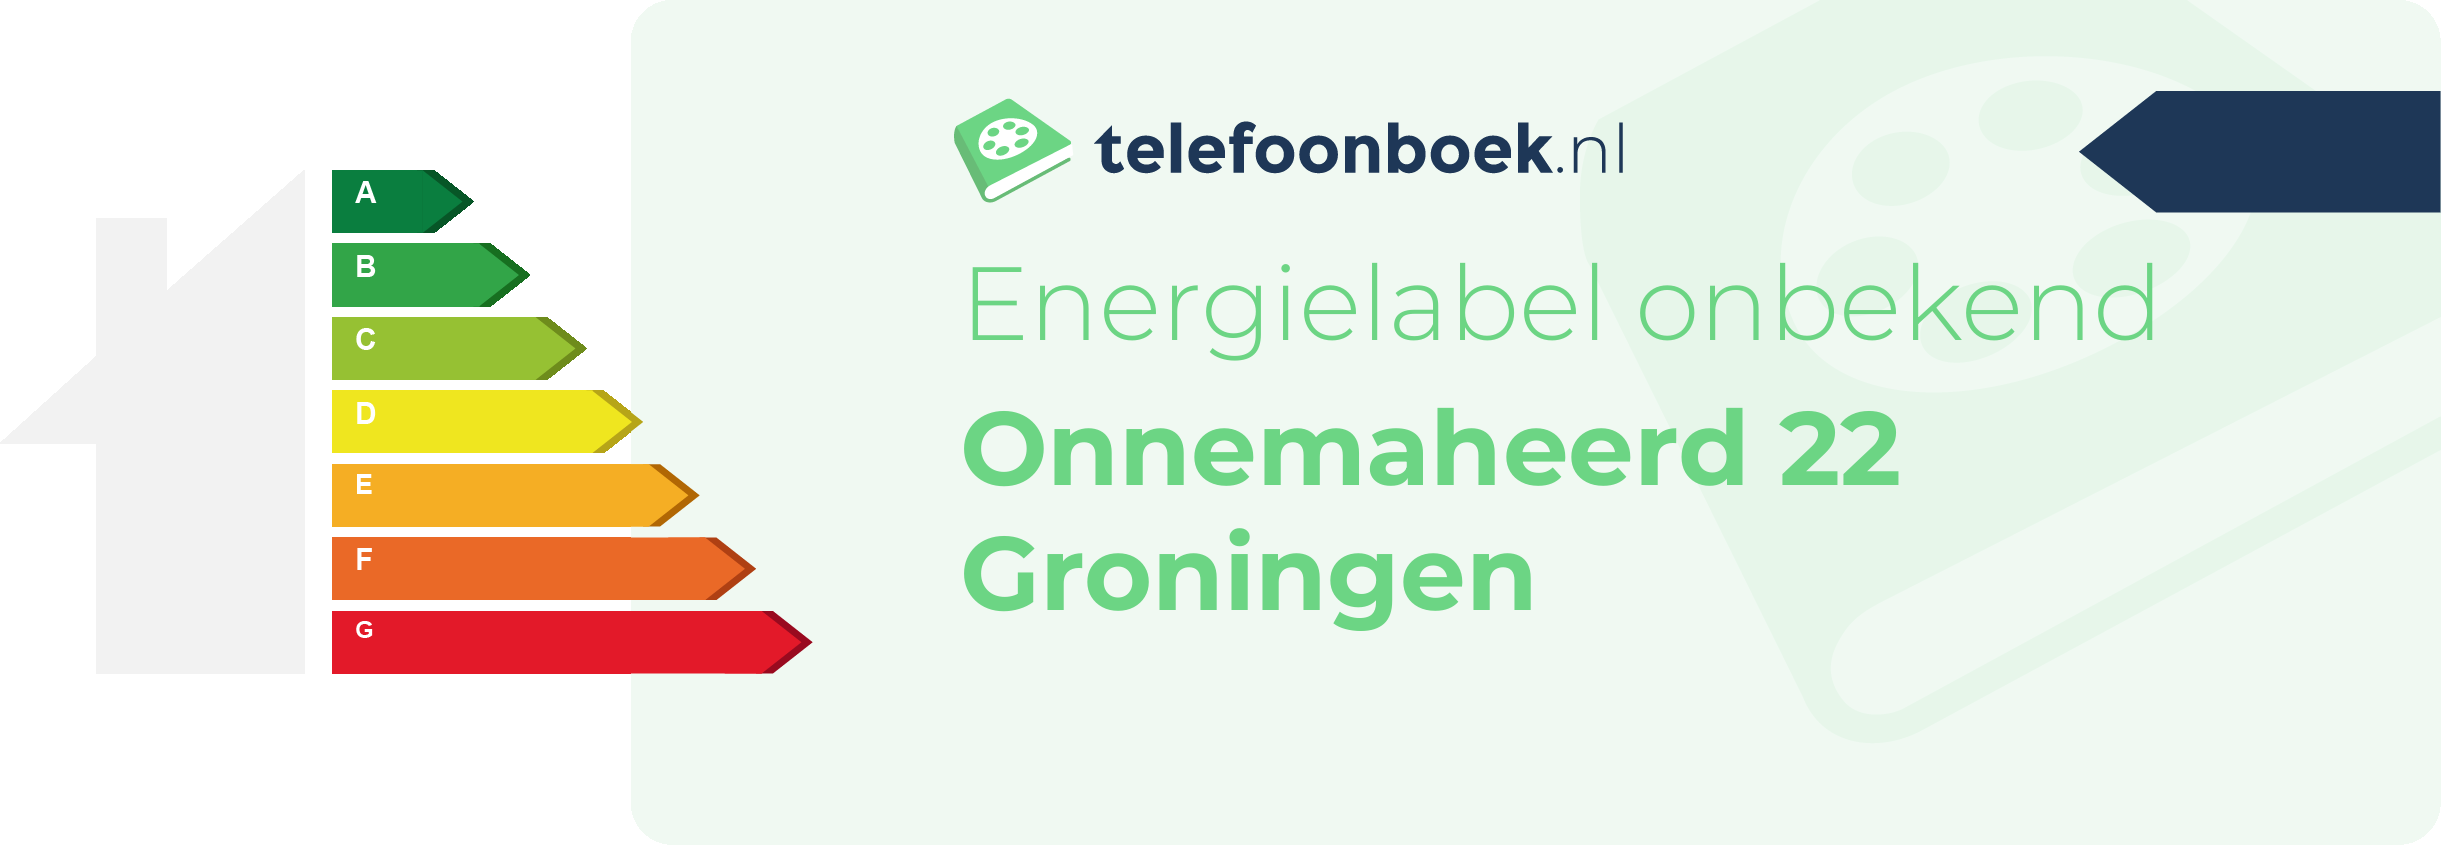 Energielabel Onnemaheerd 22 Groningen